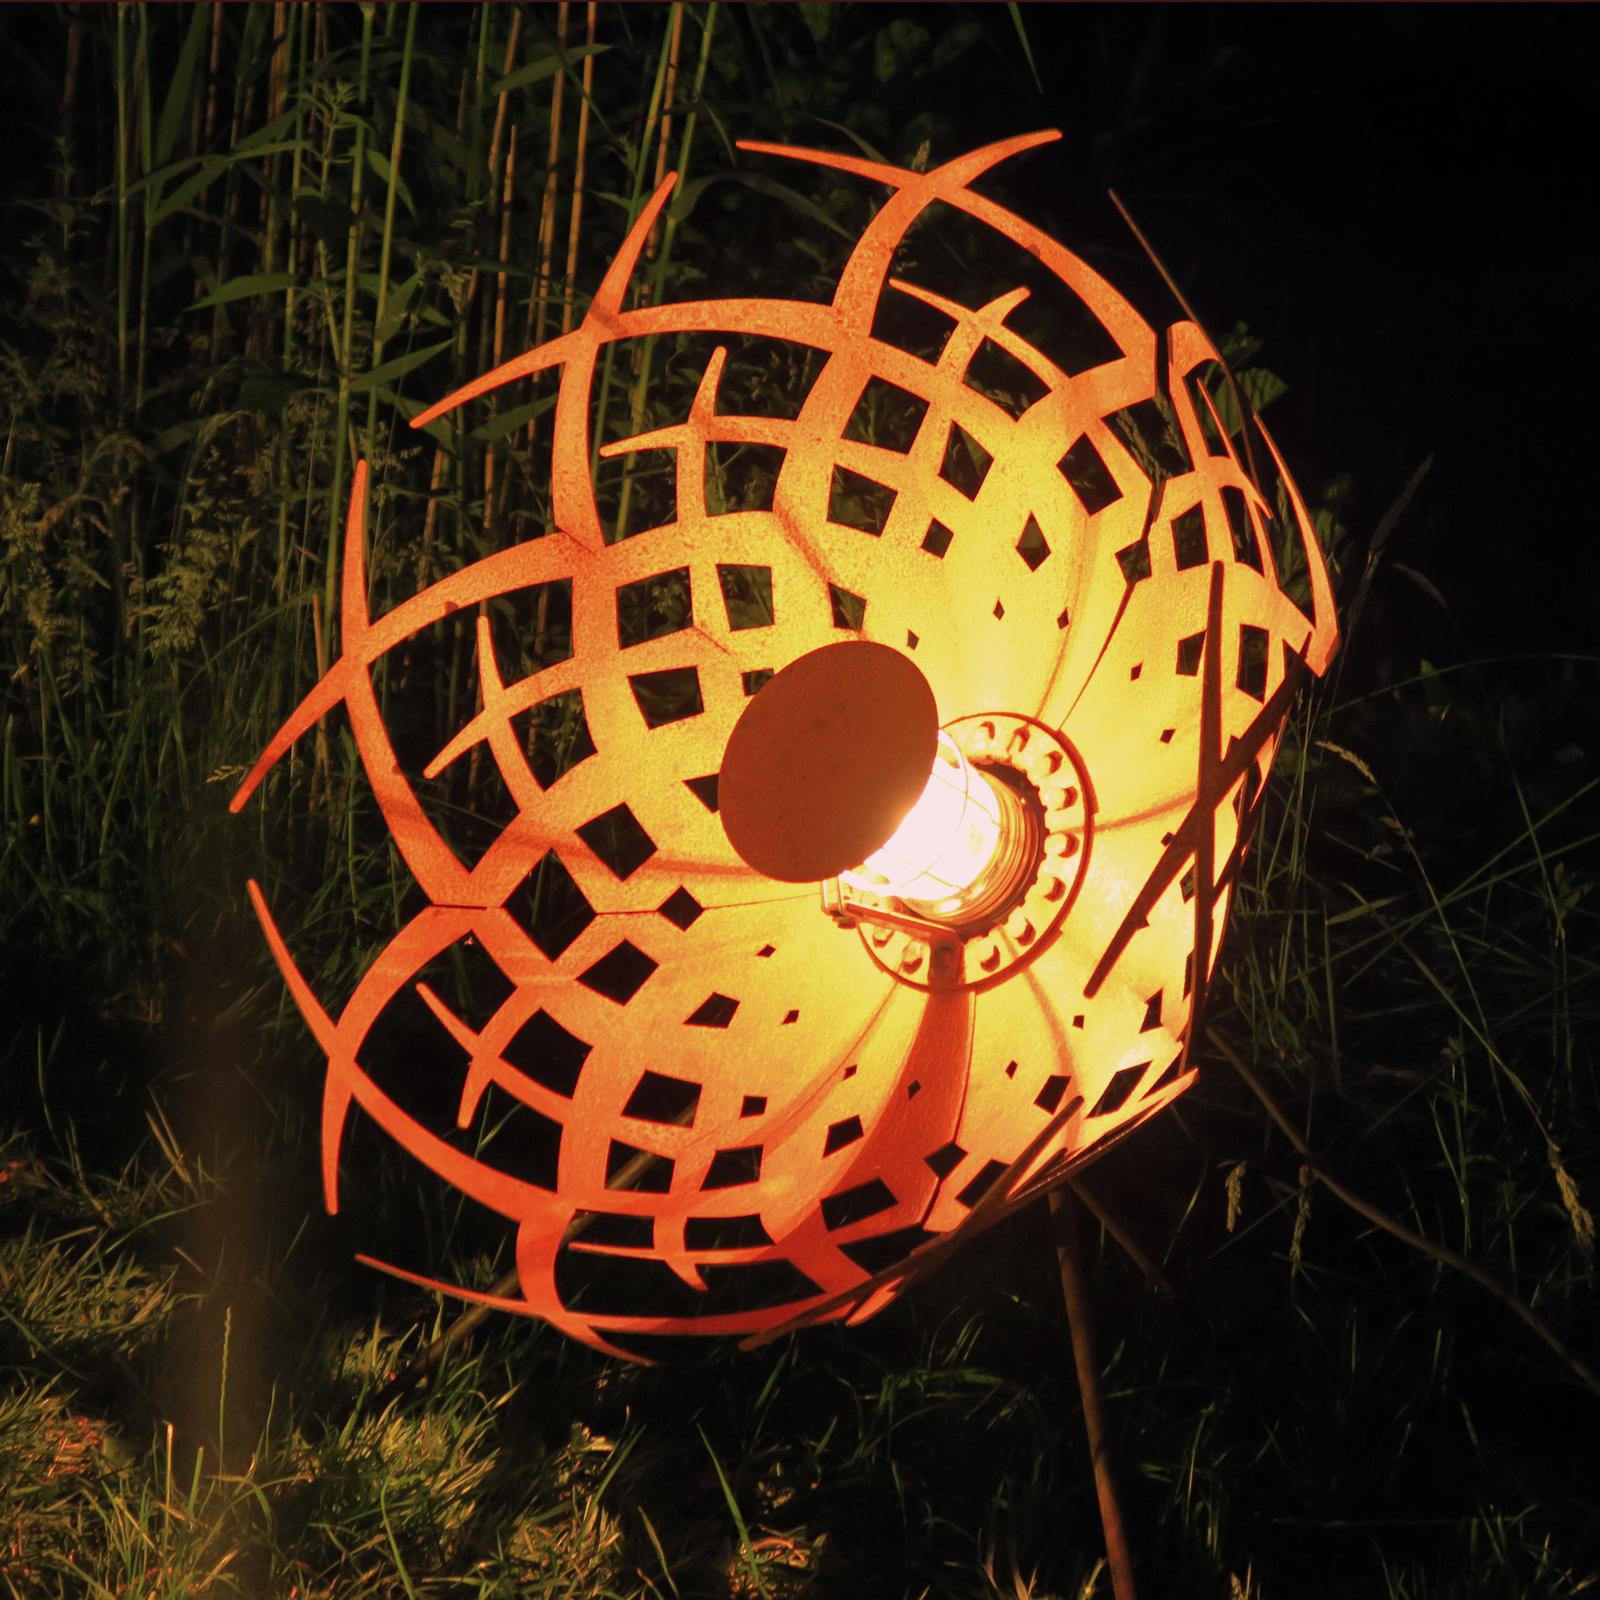 Outdoor Lamp - "Umbrella" - unique rusty ornament - Mixed Media Art by Stefan Traloc